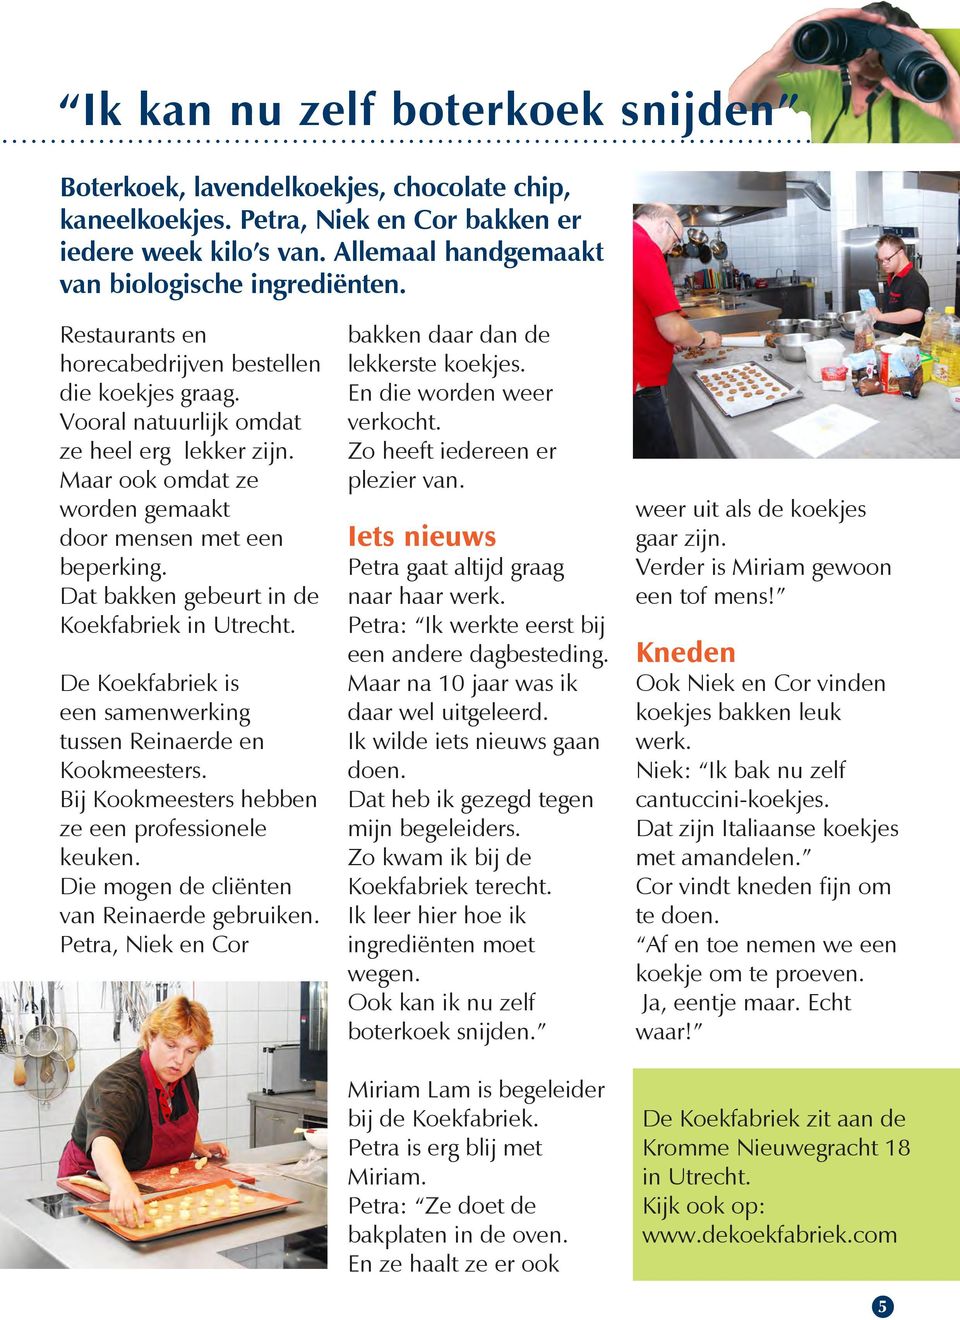 Dat bakken gebeurt in de Koekfabriek in Utrecht. De Koekfabriek is een samenwerking tussen Reinaerde en Kookmeesters. Bij Kookmeesters hebben ze een professionele keuken.